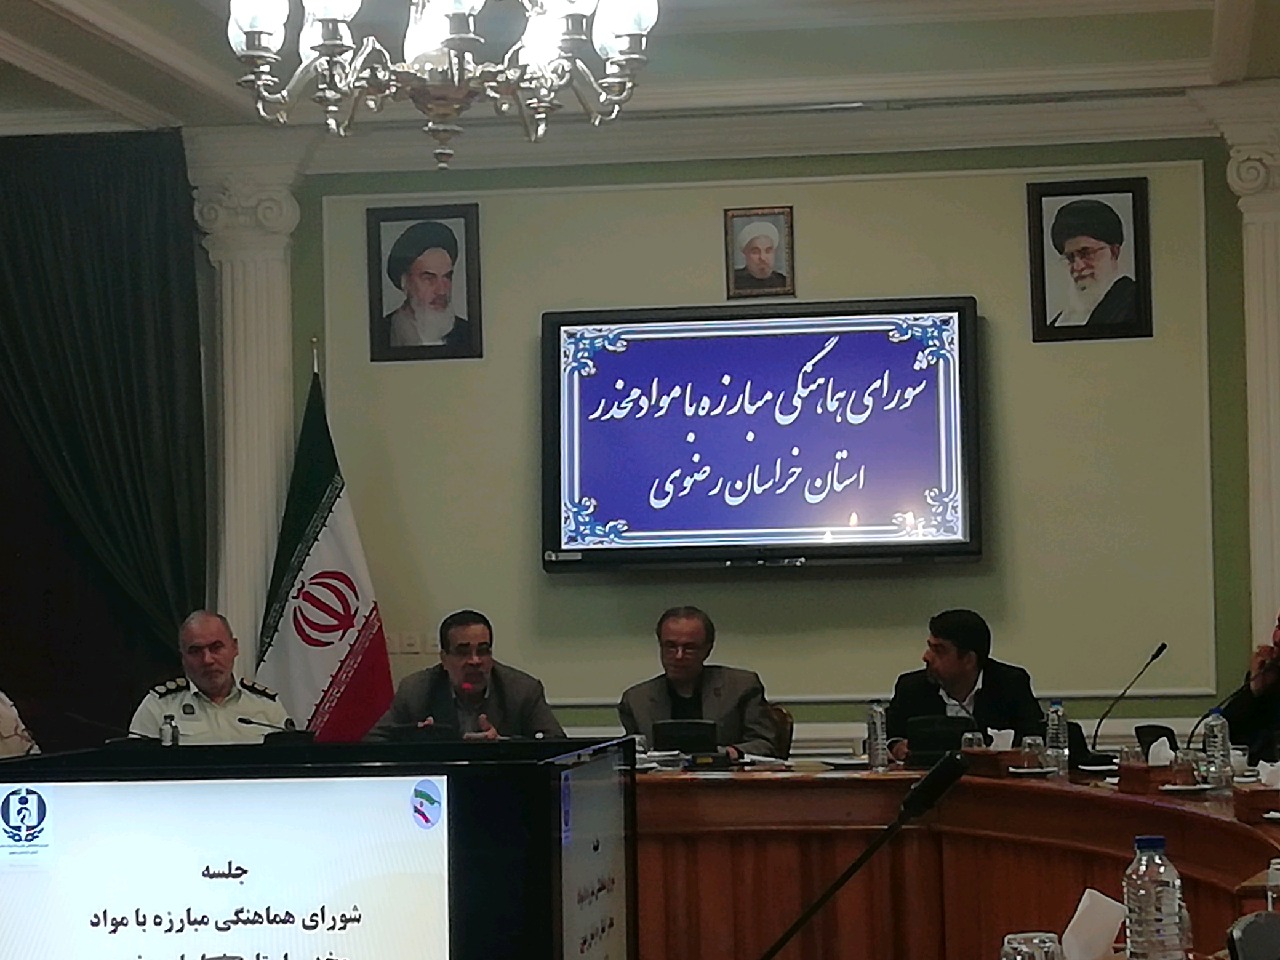 جمع آروی معتادان متهاجر در مشهد تا پایان دی